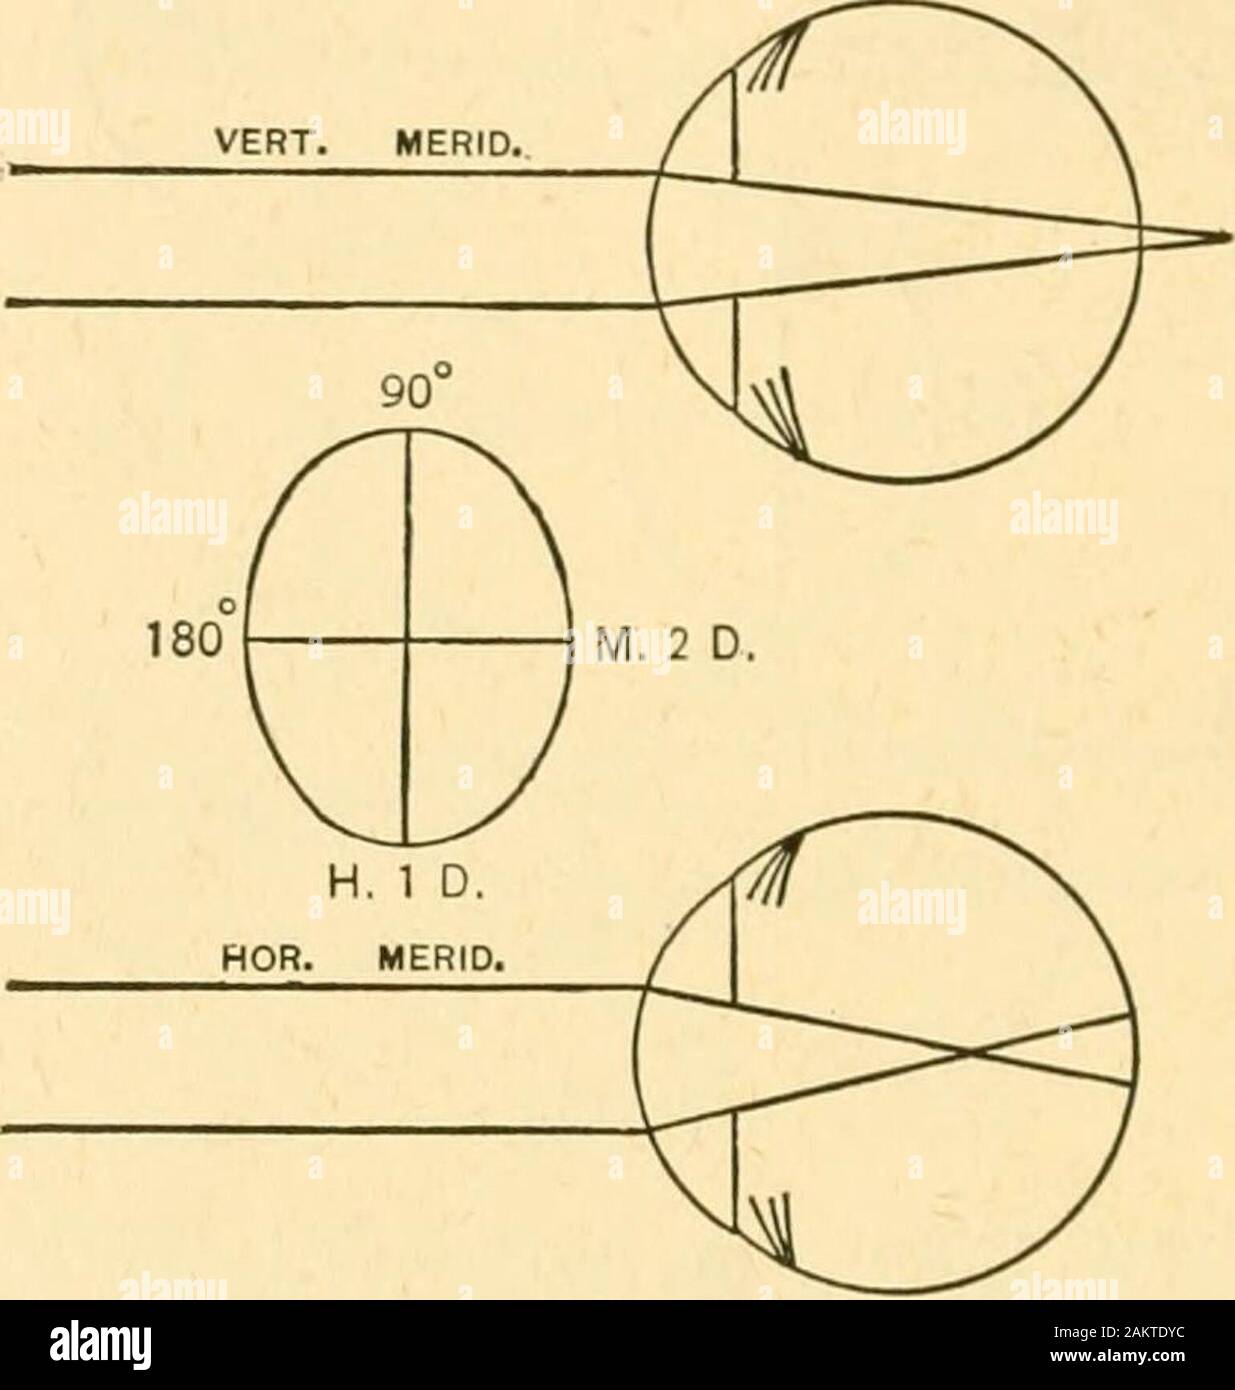 La réfraction de l'œil ; y compris un traité complet sur opthalmometry ; un texte clinique-livre pour les étudiants et les praticiens . Via. 17. 26 LA RÉFRACTION DE L'ŒIL de l'horizontale, est moins courbé, et par conséquent, il est d'astig-matism contre la règle. 5. L'astigmatisme mixte contre la règle. - L'axe vertical moi-ridian est hypermetropic, rayons porte arrière de la rétine, andis Moins ondulé que le méridien horizontal, qui est myope, et se concentre dans les rayons avant de la rétine.. Fig. 18. Par le diagramme ci-dessus nous voyons que l'astigmatisme peut beagainst la règle dans toutes ses formes. Tant que l'axe vertical moi-r Banque D'Images